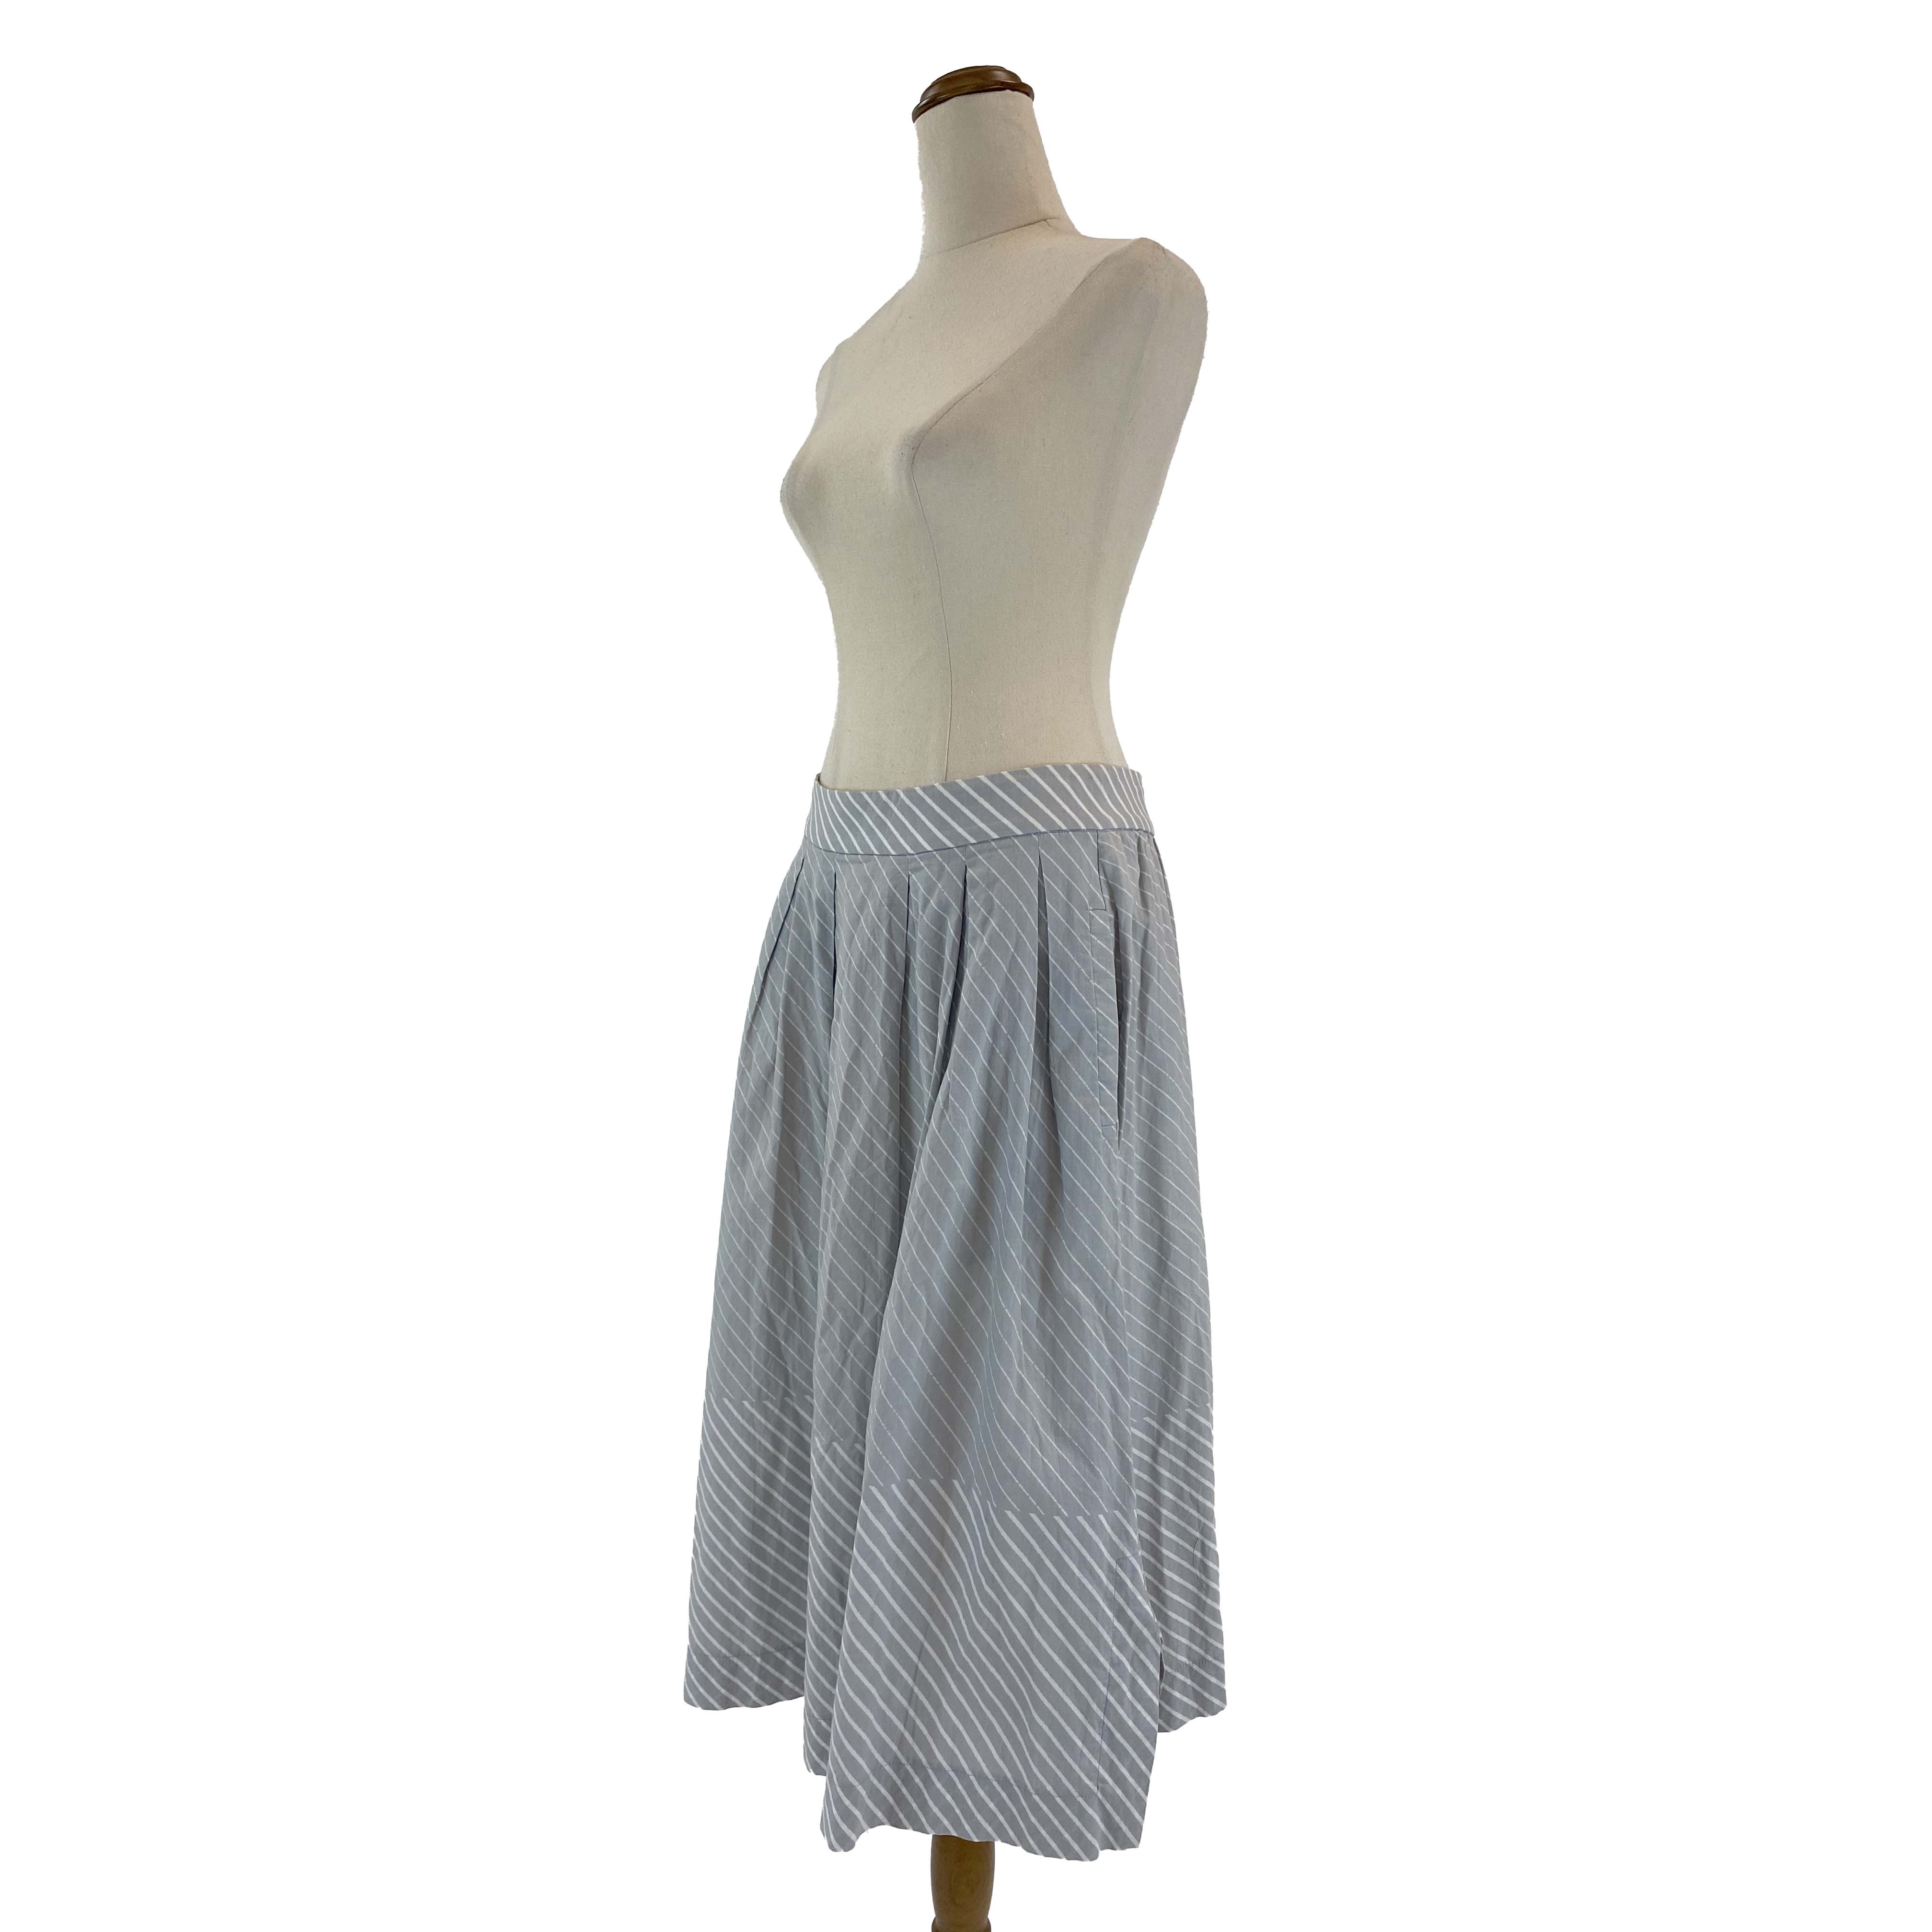 KLOKE Light Gray Striped Skirt